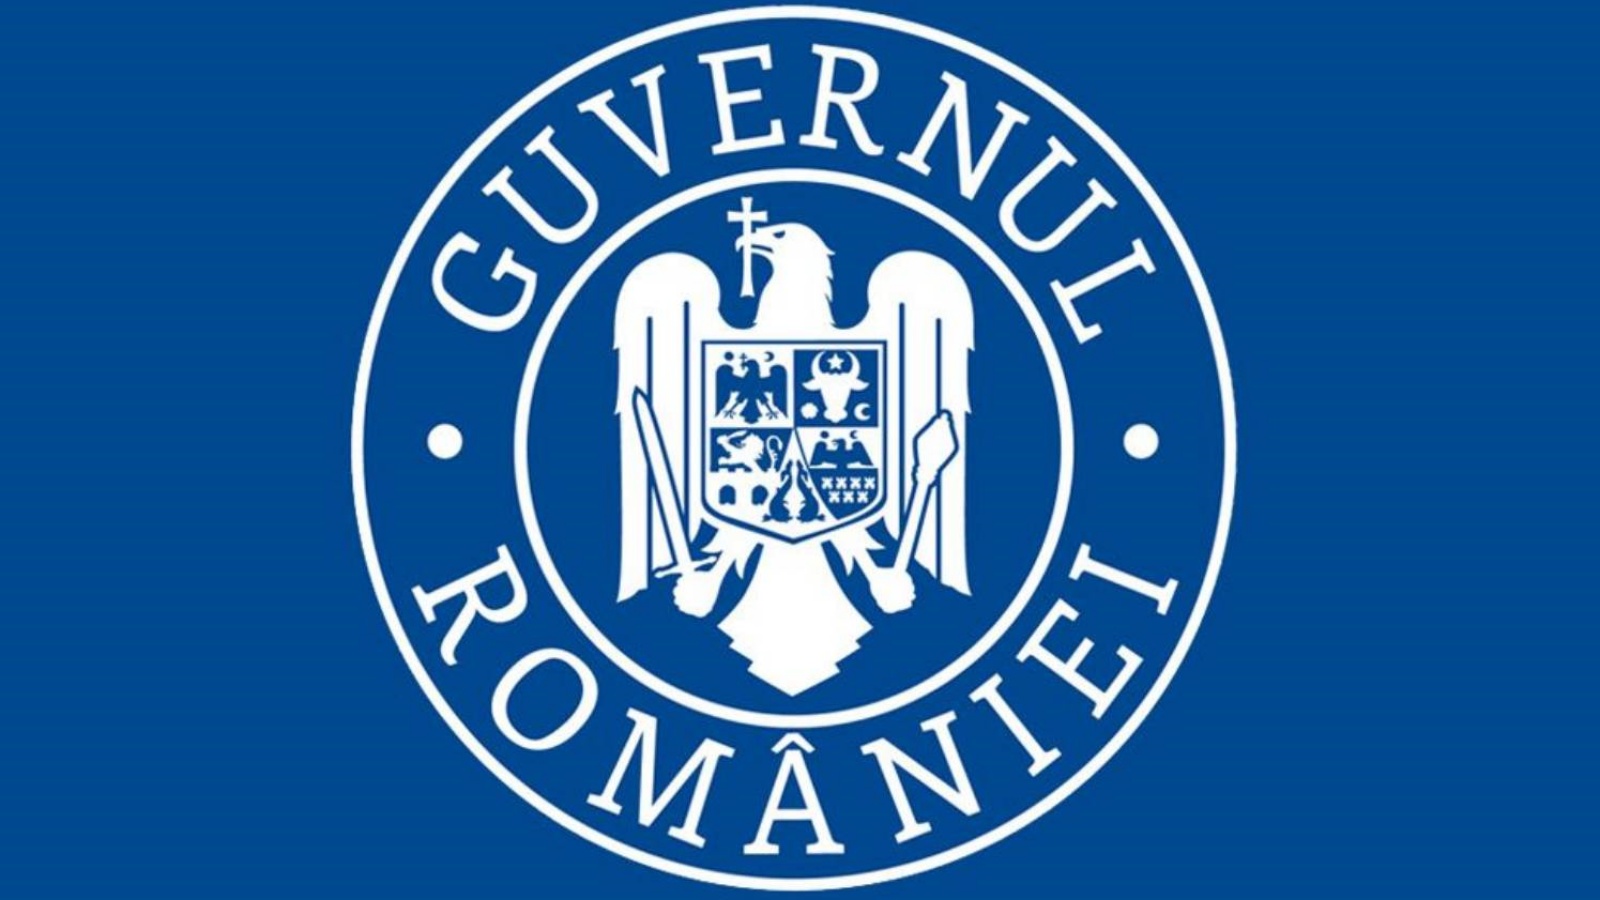 Den rumänska regeringen är i förlängd beredskap till september 2021